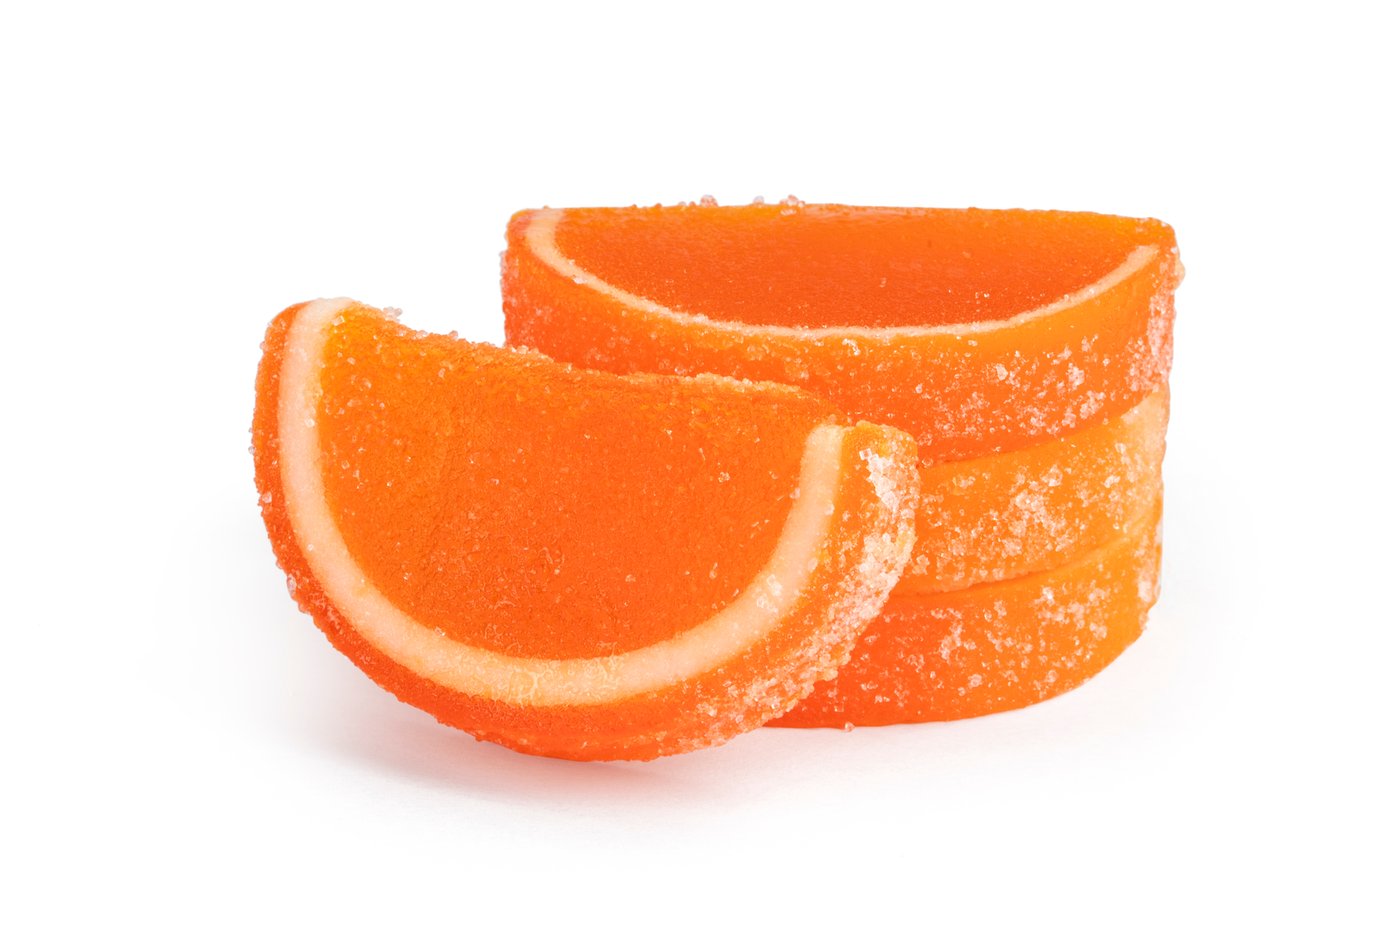 Orange Fruit Slices image zoom